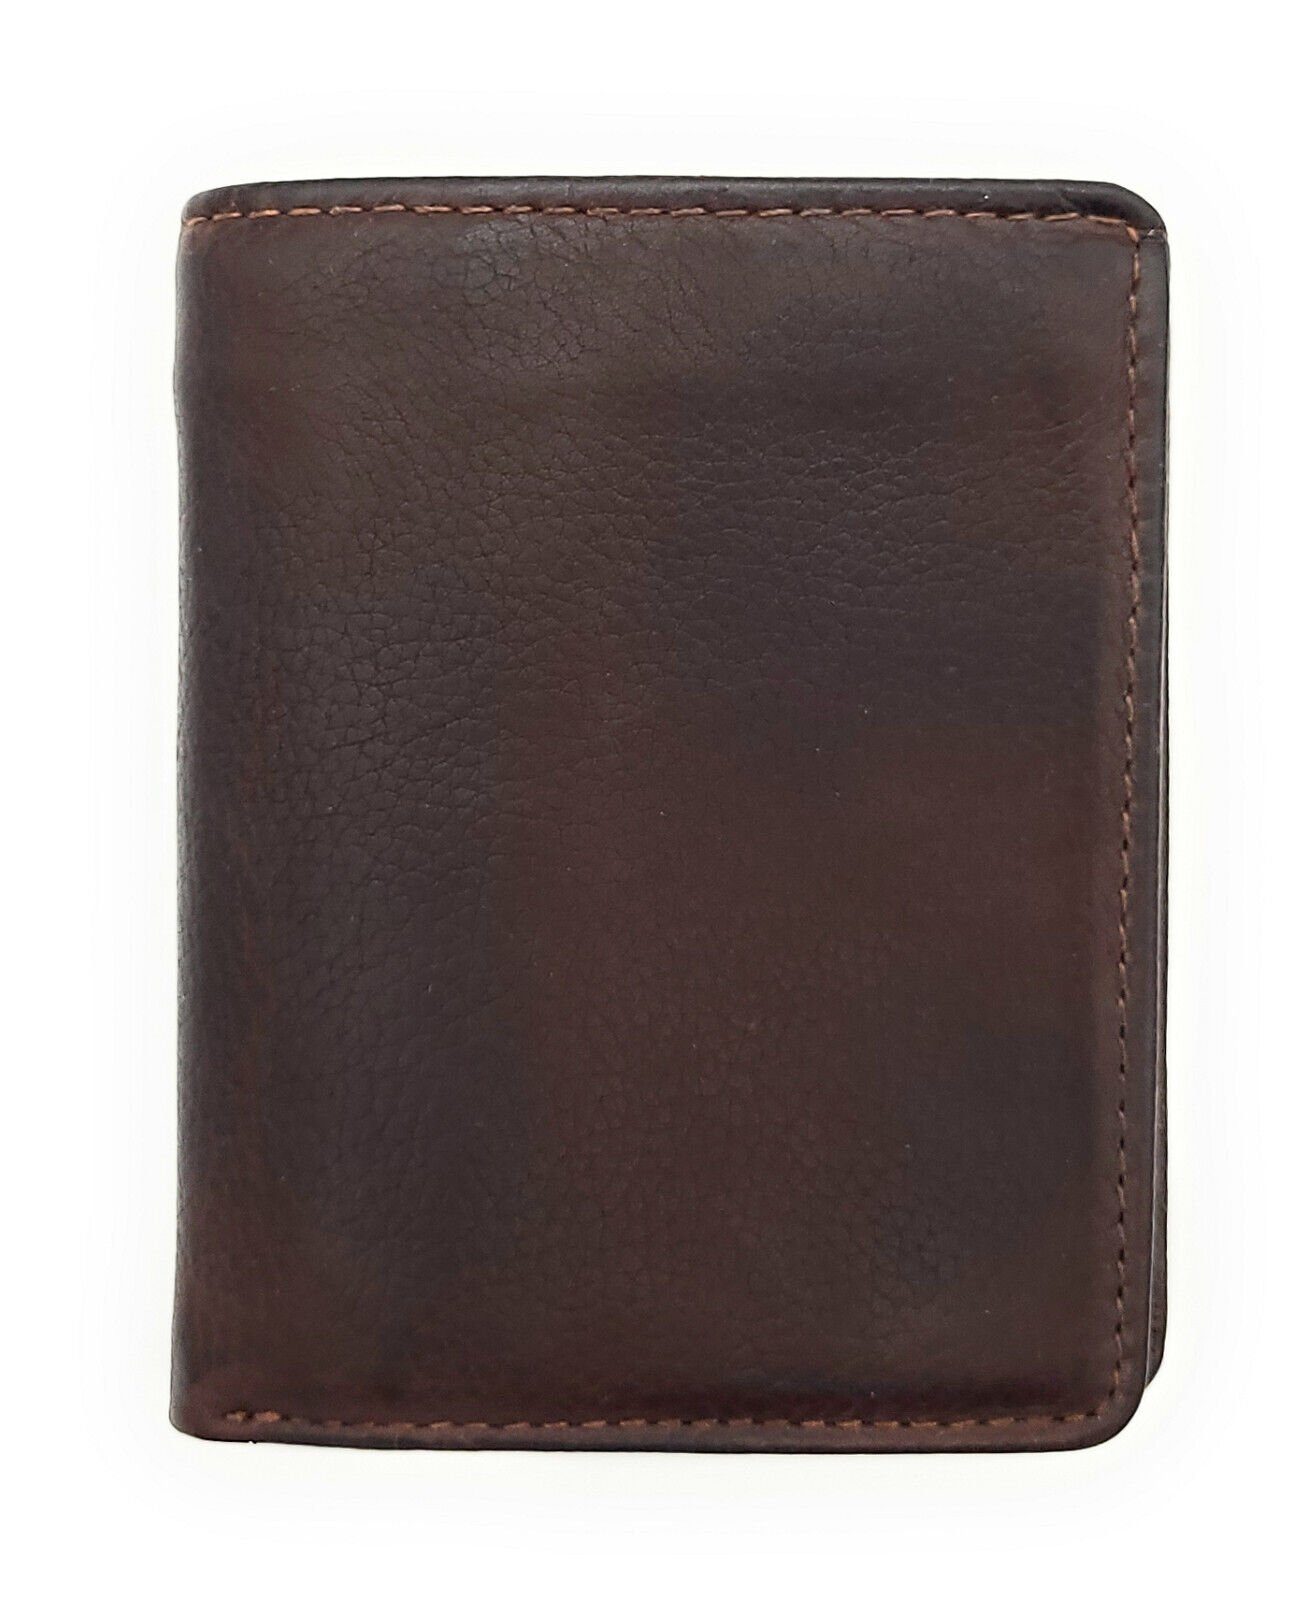 gewachstes Schutz Geldbörse Mini RFID Leder Portemonnaie vintage dunkelbraun, echt Rindleder CLUB JOCKEY mit